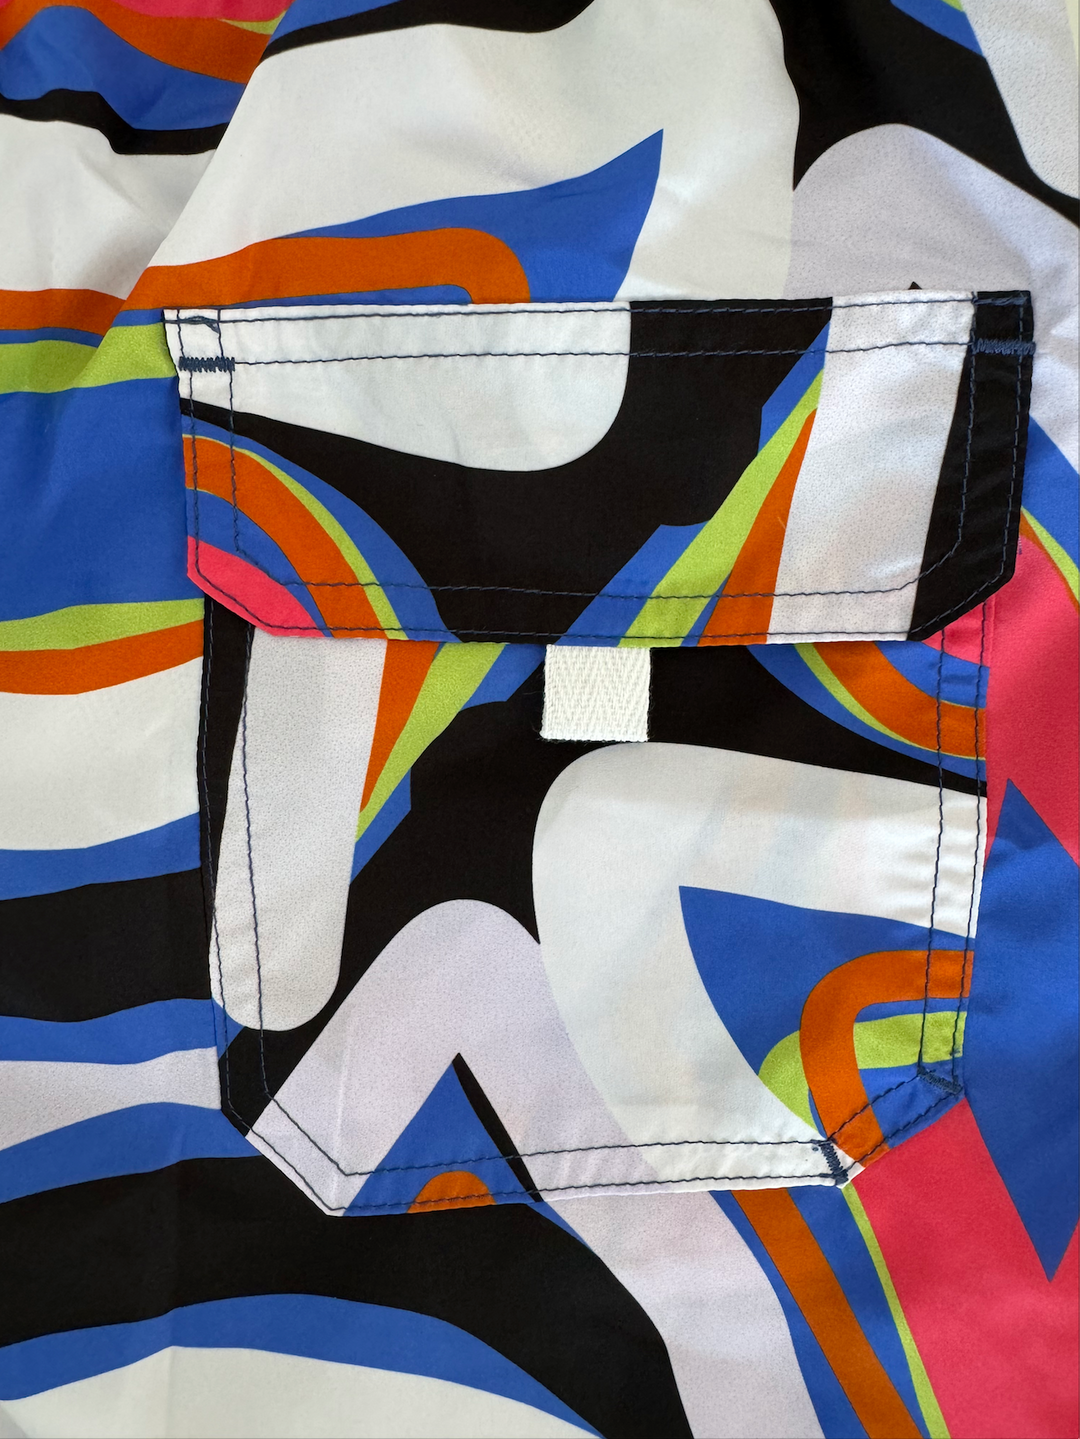 Line Multicolor swimsuit